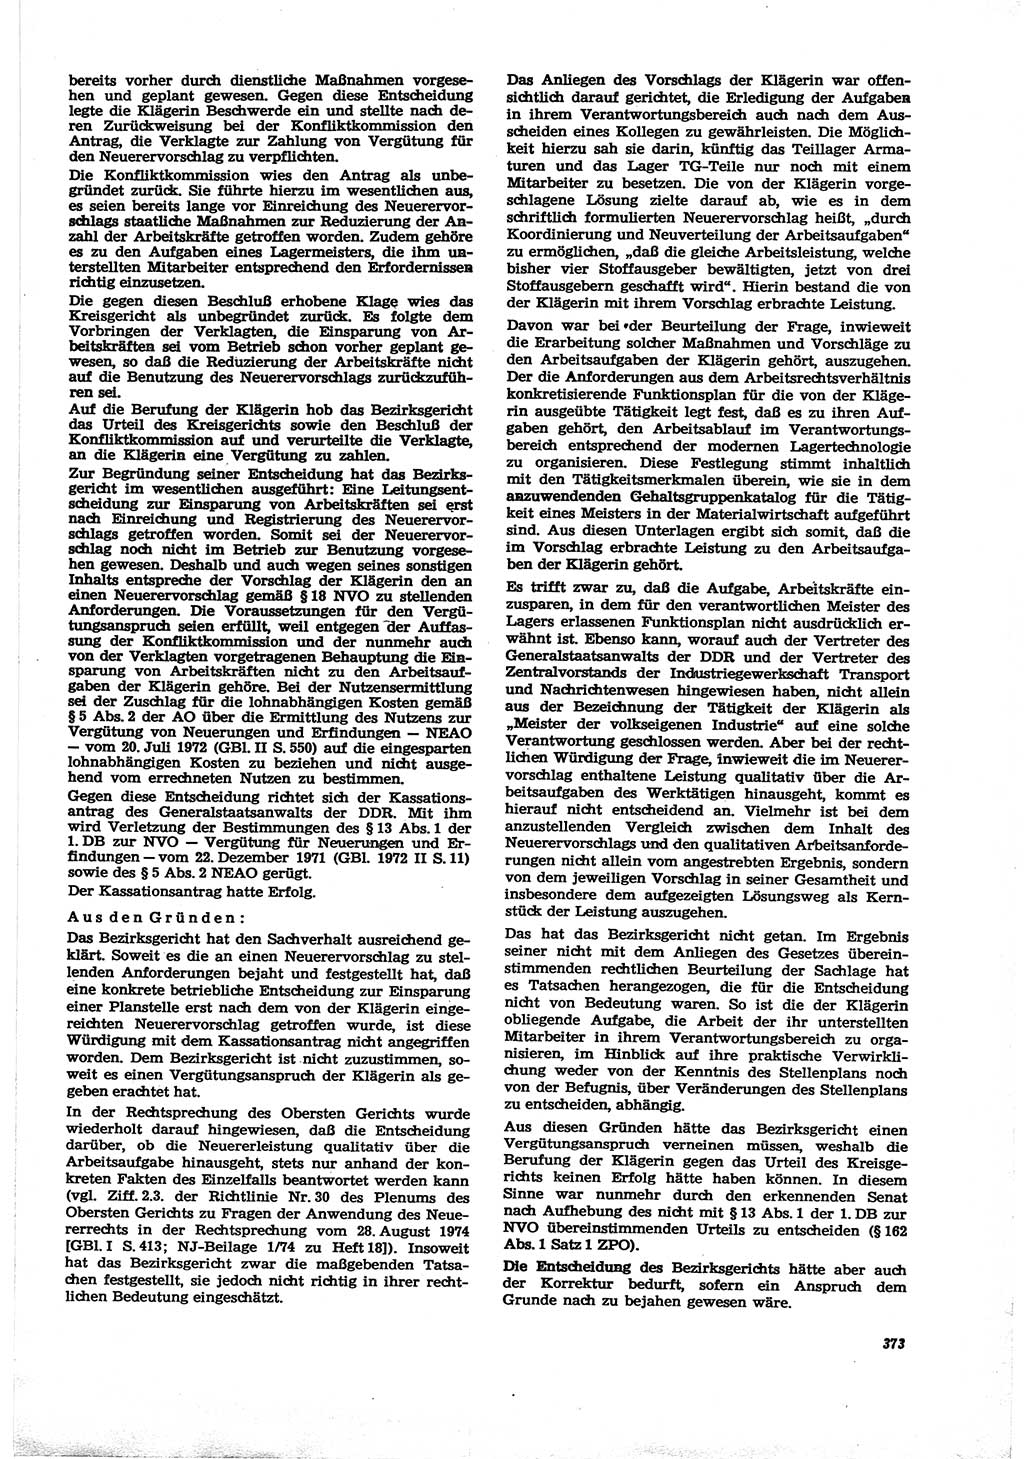 Neue Justiz (NJ), Zeitschrift für Recht und Rechtswissenschaft [Deutsche Demokratische Republik (DDR)], 30. Jahrgang 1976, Seite 373 (NJ DDR 1976, S. 373)